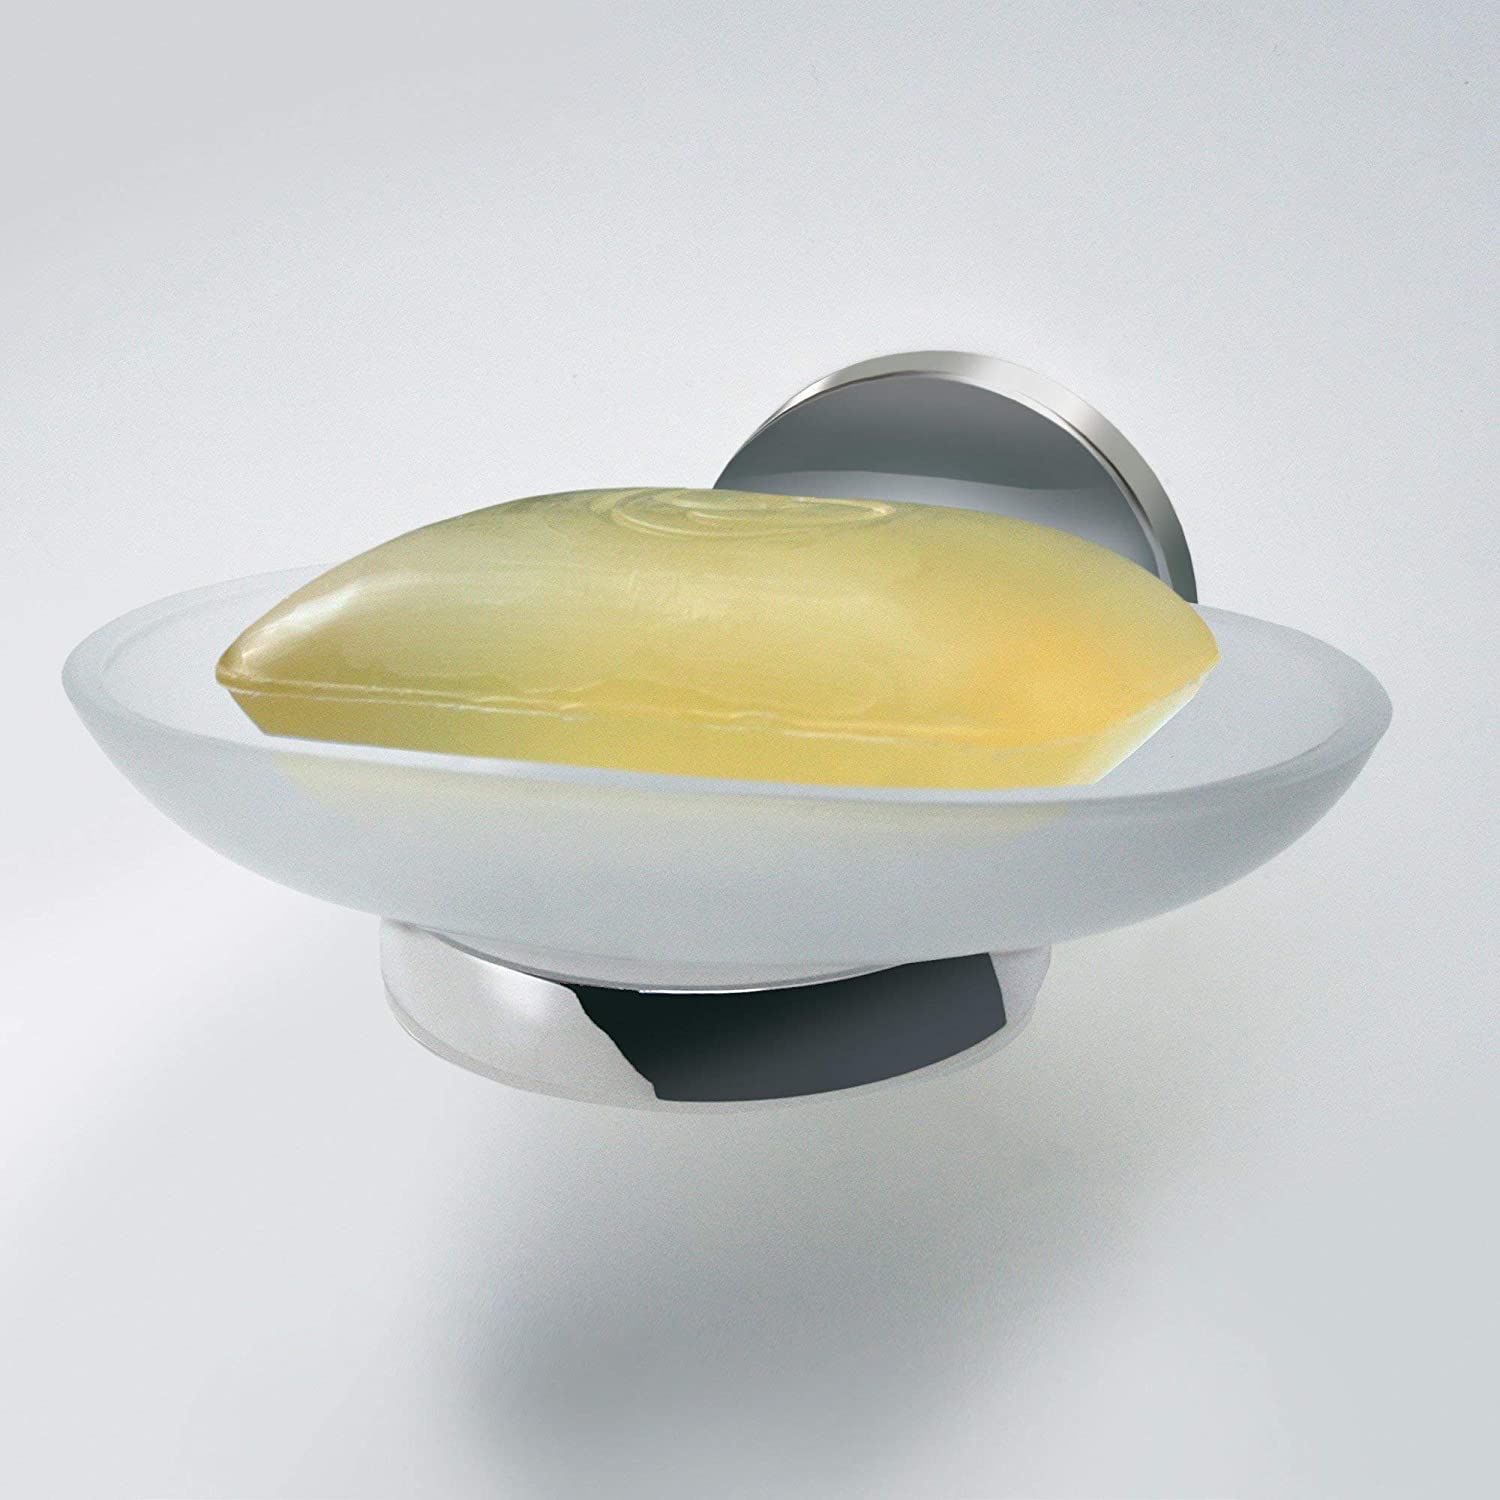 Ablageschale VISION, Seifenschale mit verchromtem Halter, Seifenhalter aus Glas (Farbe: Silber/Milchig), Menge: 1 Stück